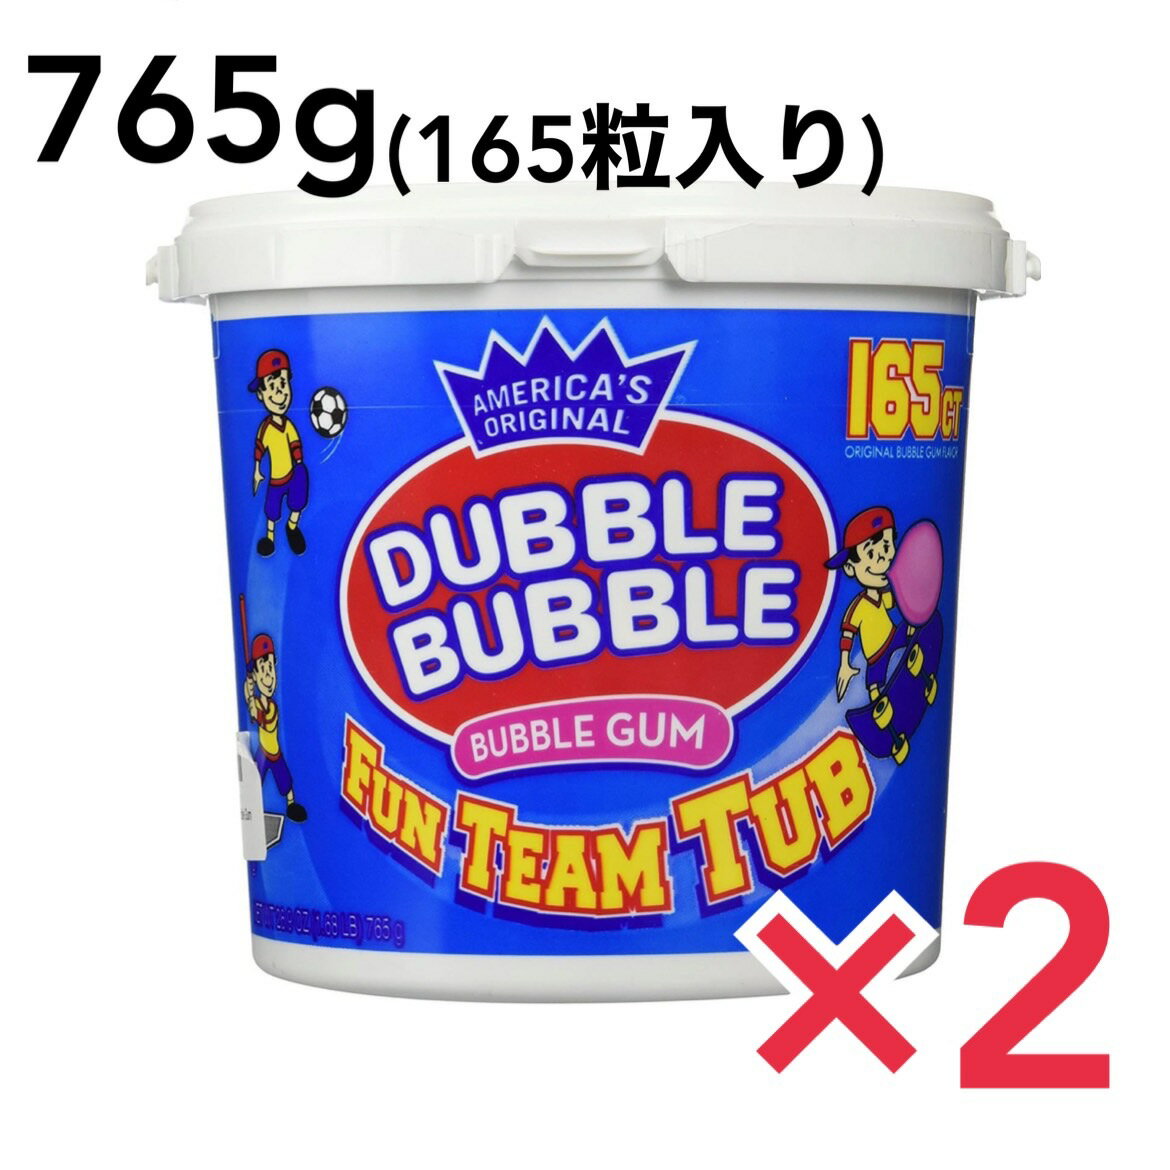 ダブルバブル バブルガムバケツ 765g（165粒入り）2個セット 輸入菓子 ガム メジャーリーガー愛用のガム バブルガムの定番 野球